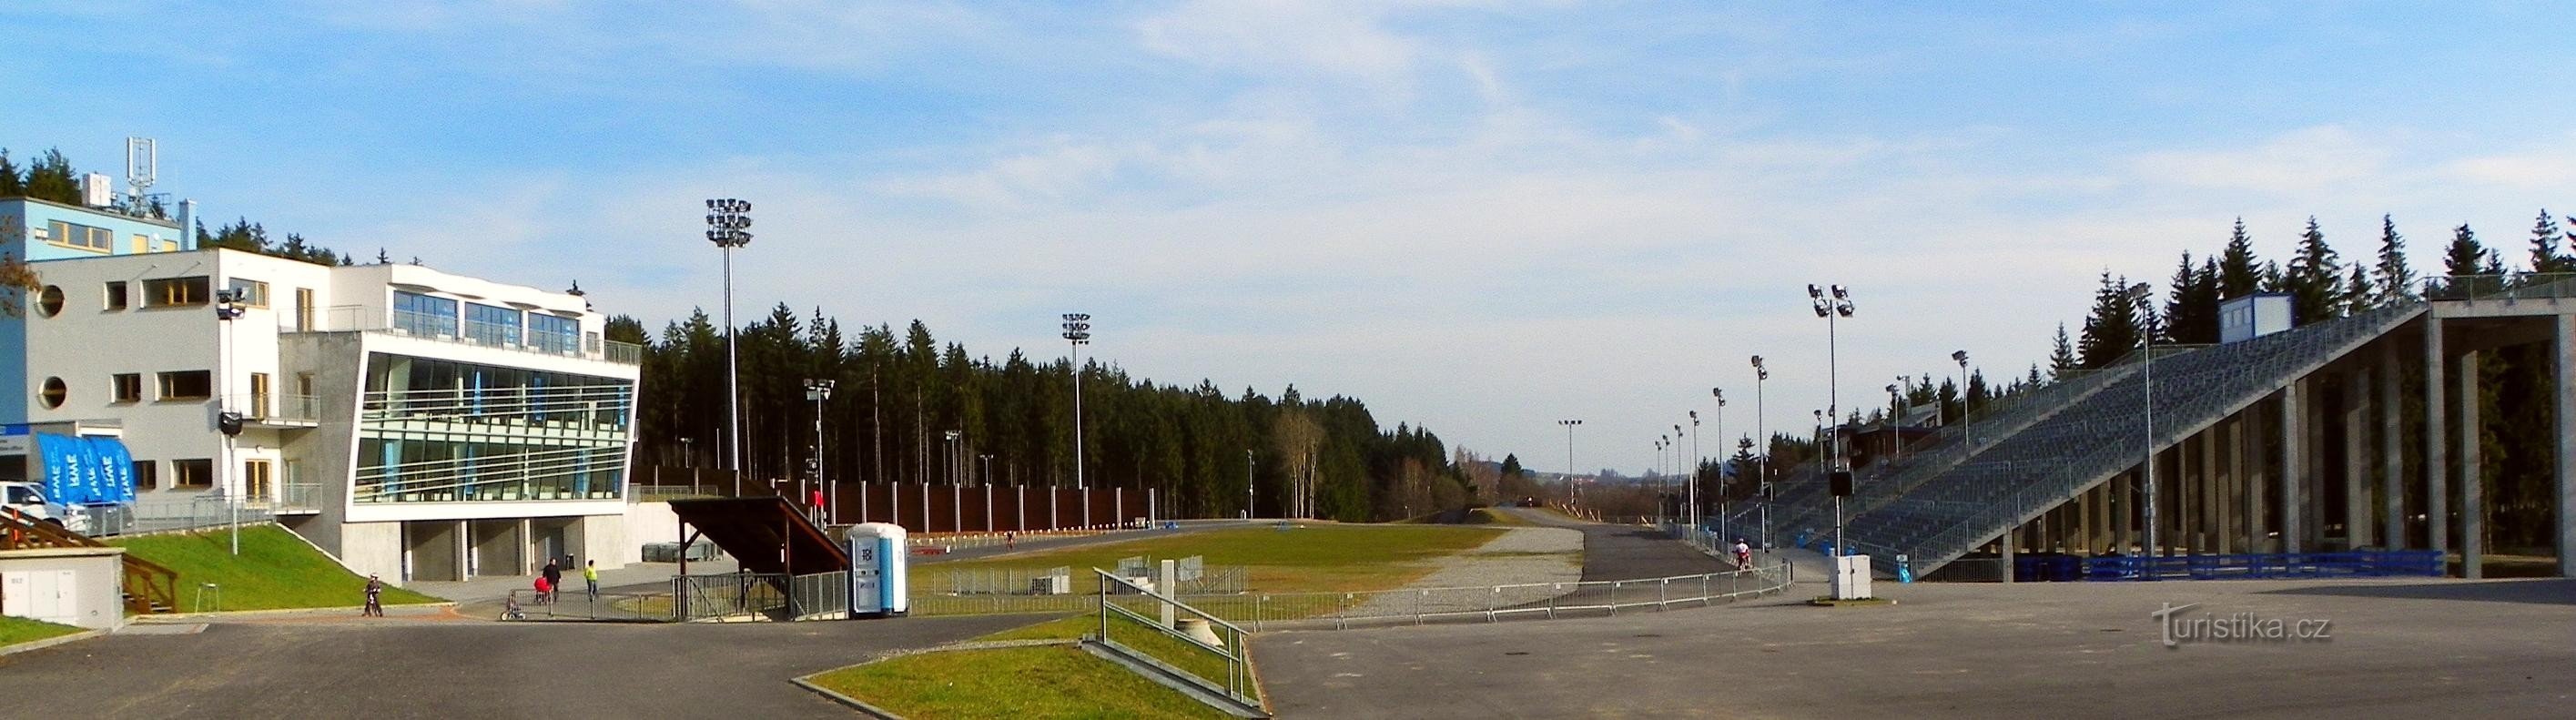 Arena Vysočina in summer